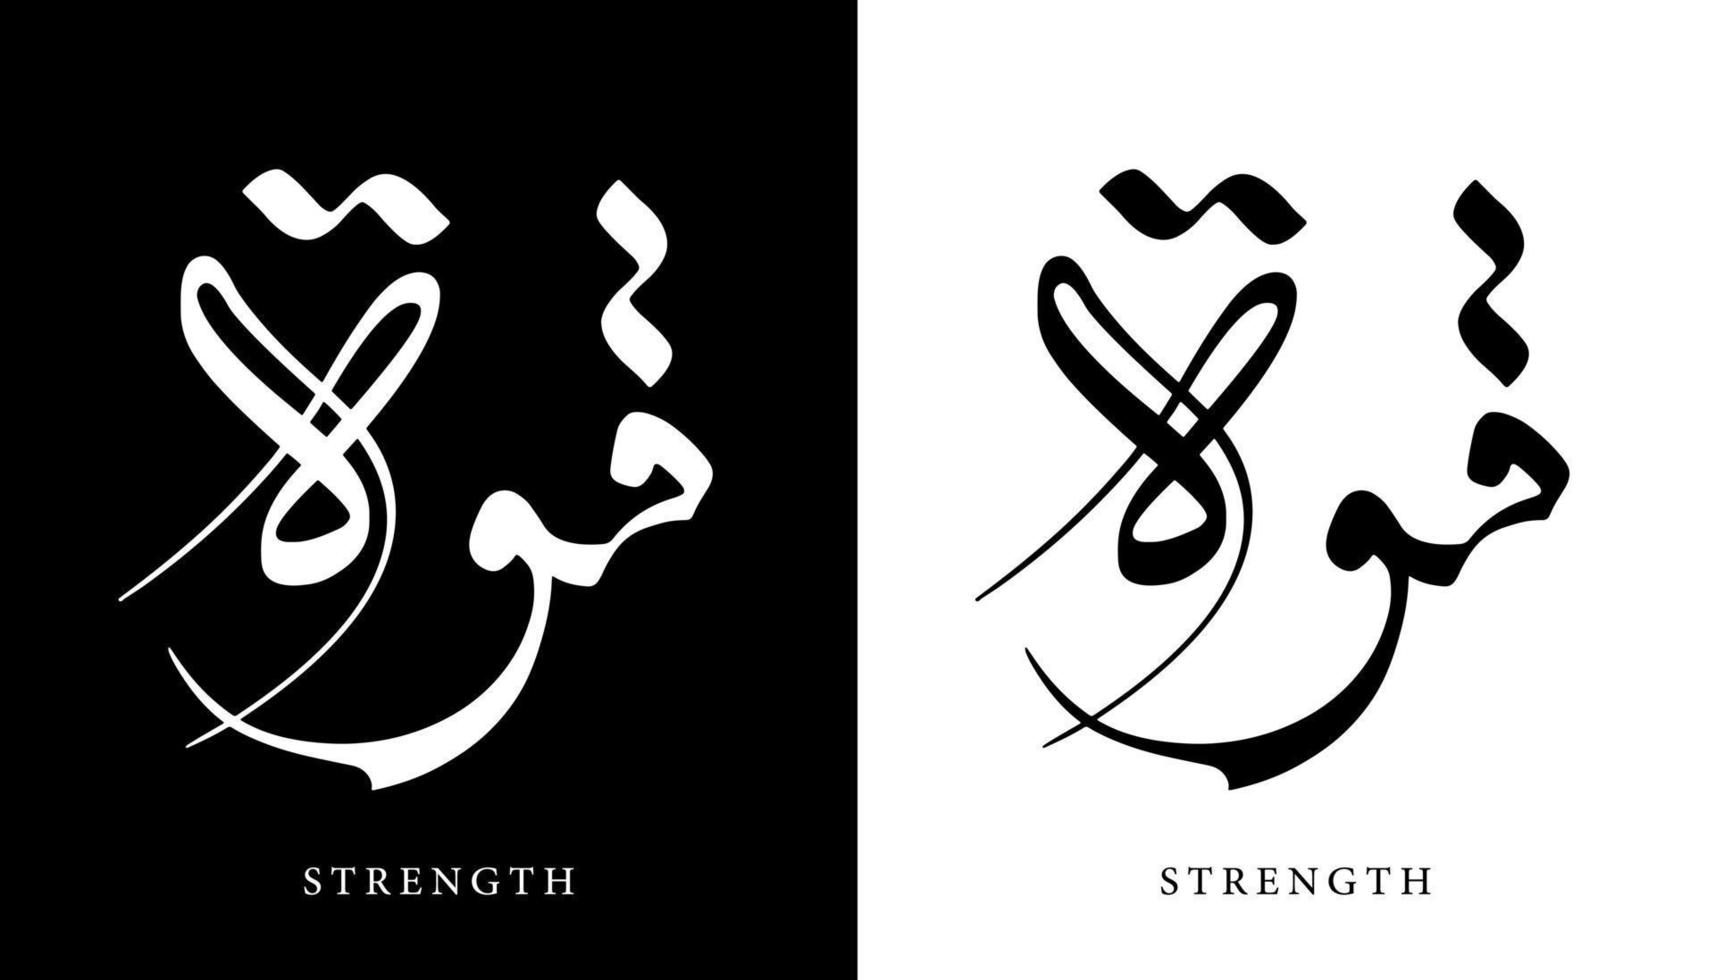 nome della calligrafia araba tradotto 'forza' lettere arabe alfabeto font lettering logo islamico illustrazione vettoriale